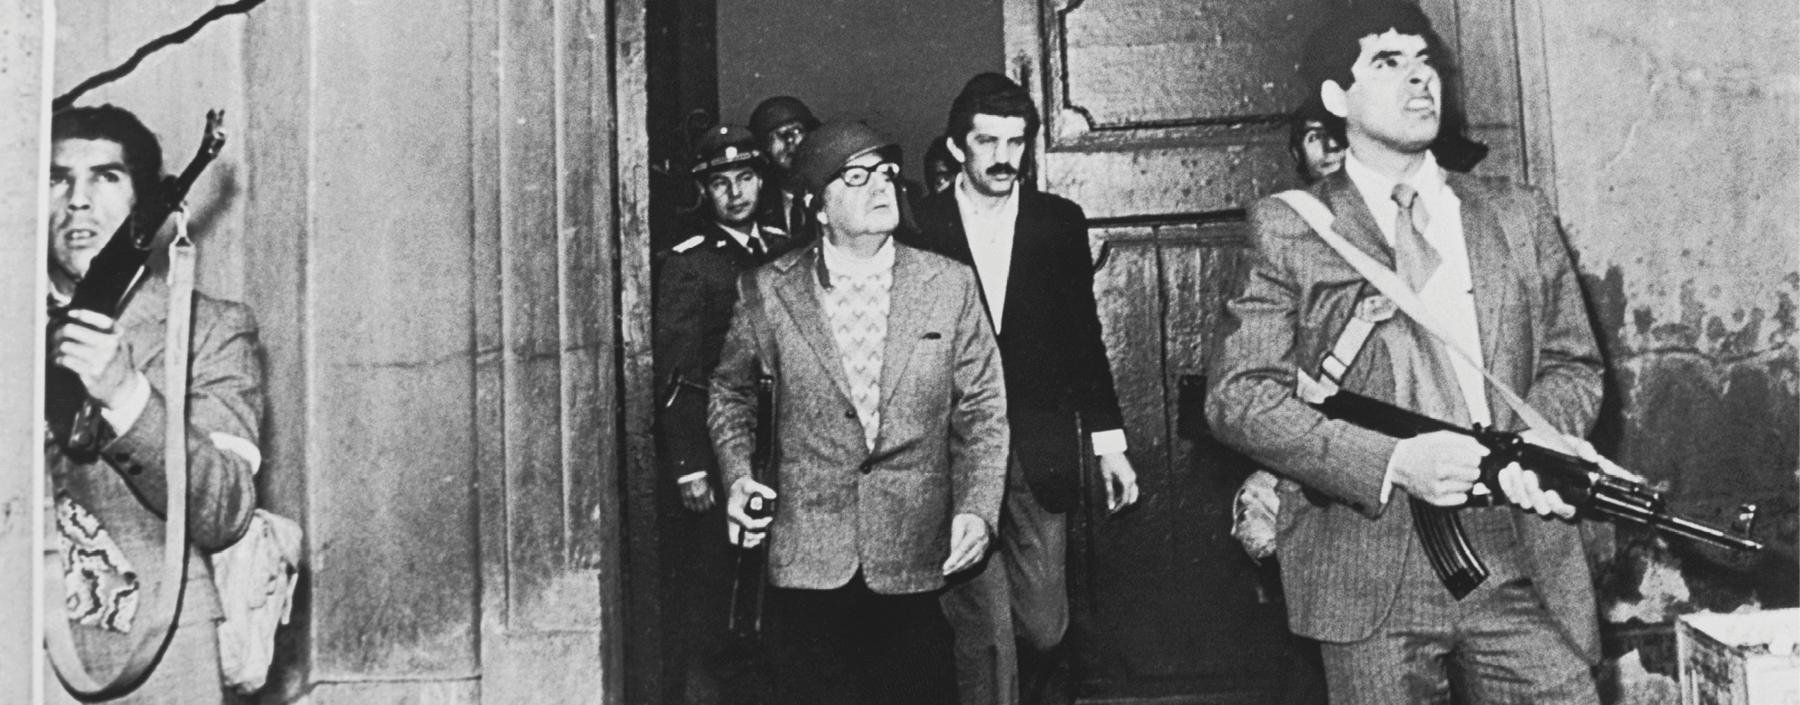 Fotografia em preto e branco. No centro da imagem, Salvador Allende, senhor de óculos e capacete. Está em frente a uma grande porta escoltado por outros homens. À sua frente, um homem com a testa franzida e os dentes cerrados. Empunha uma grande. Ao redor, outros homens.